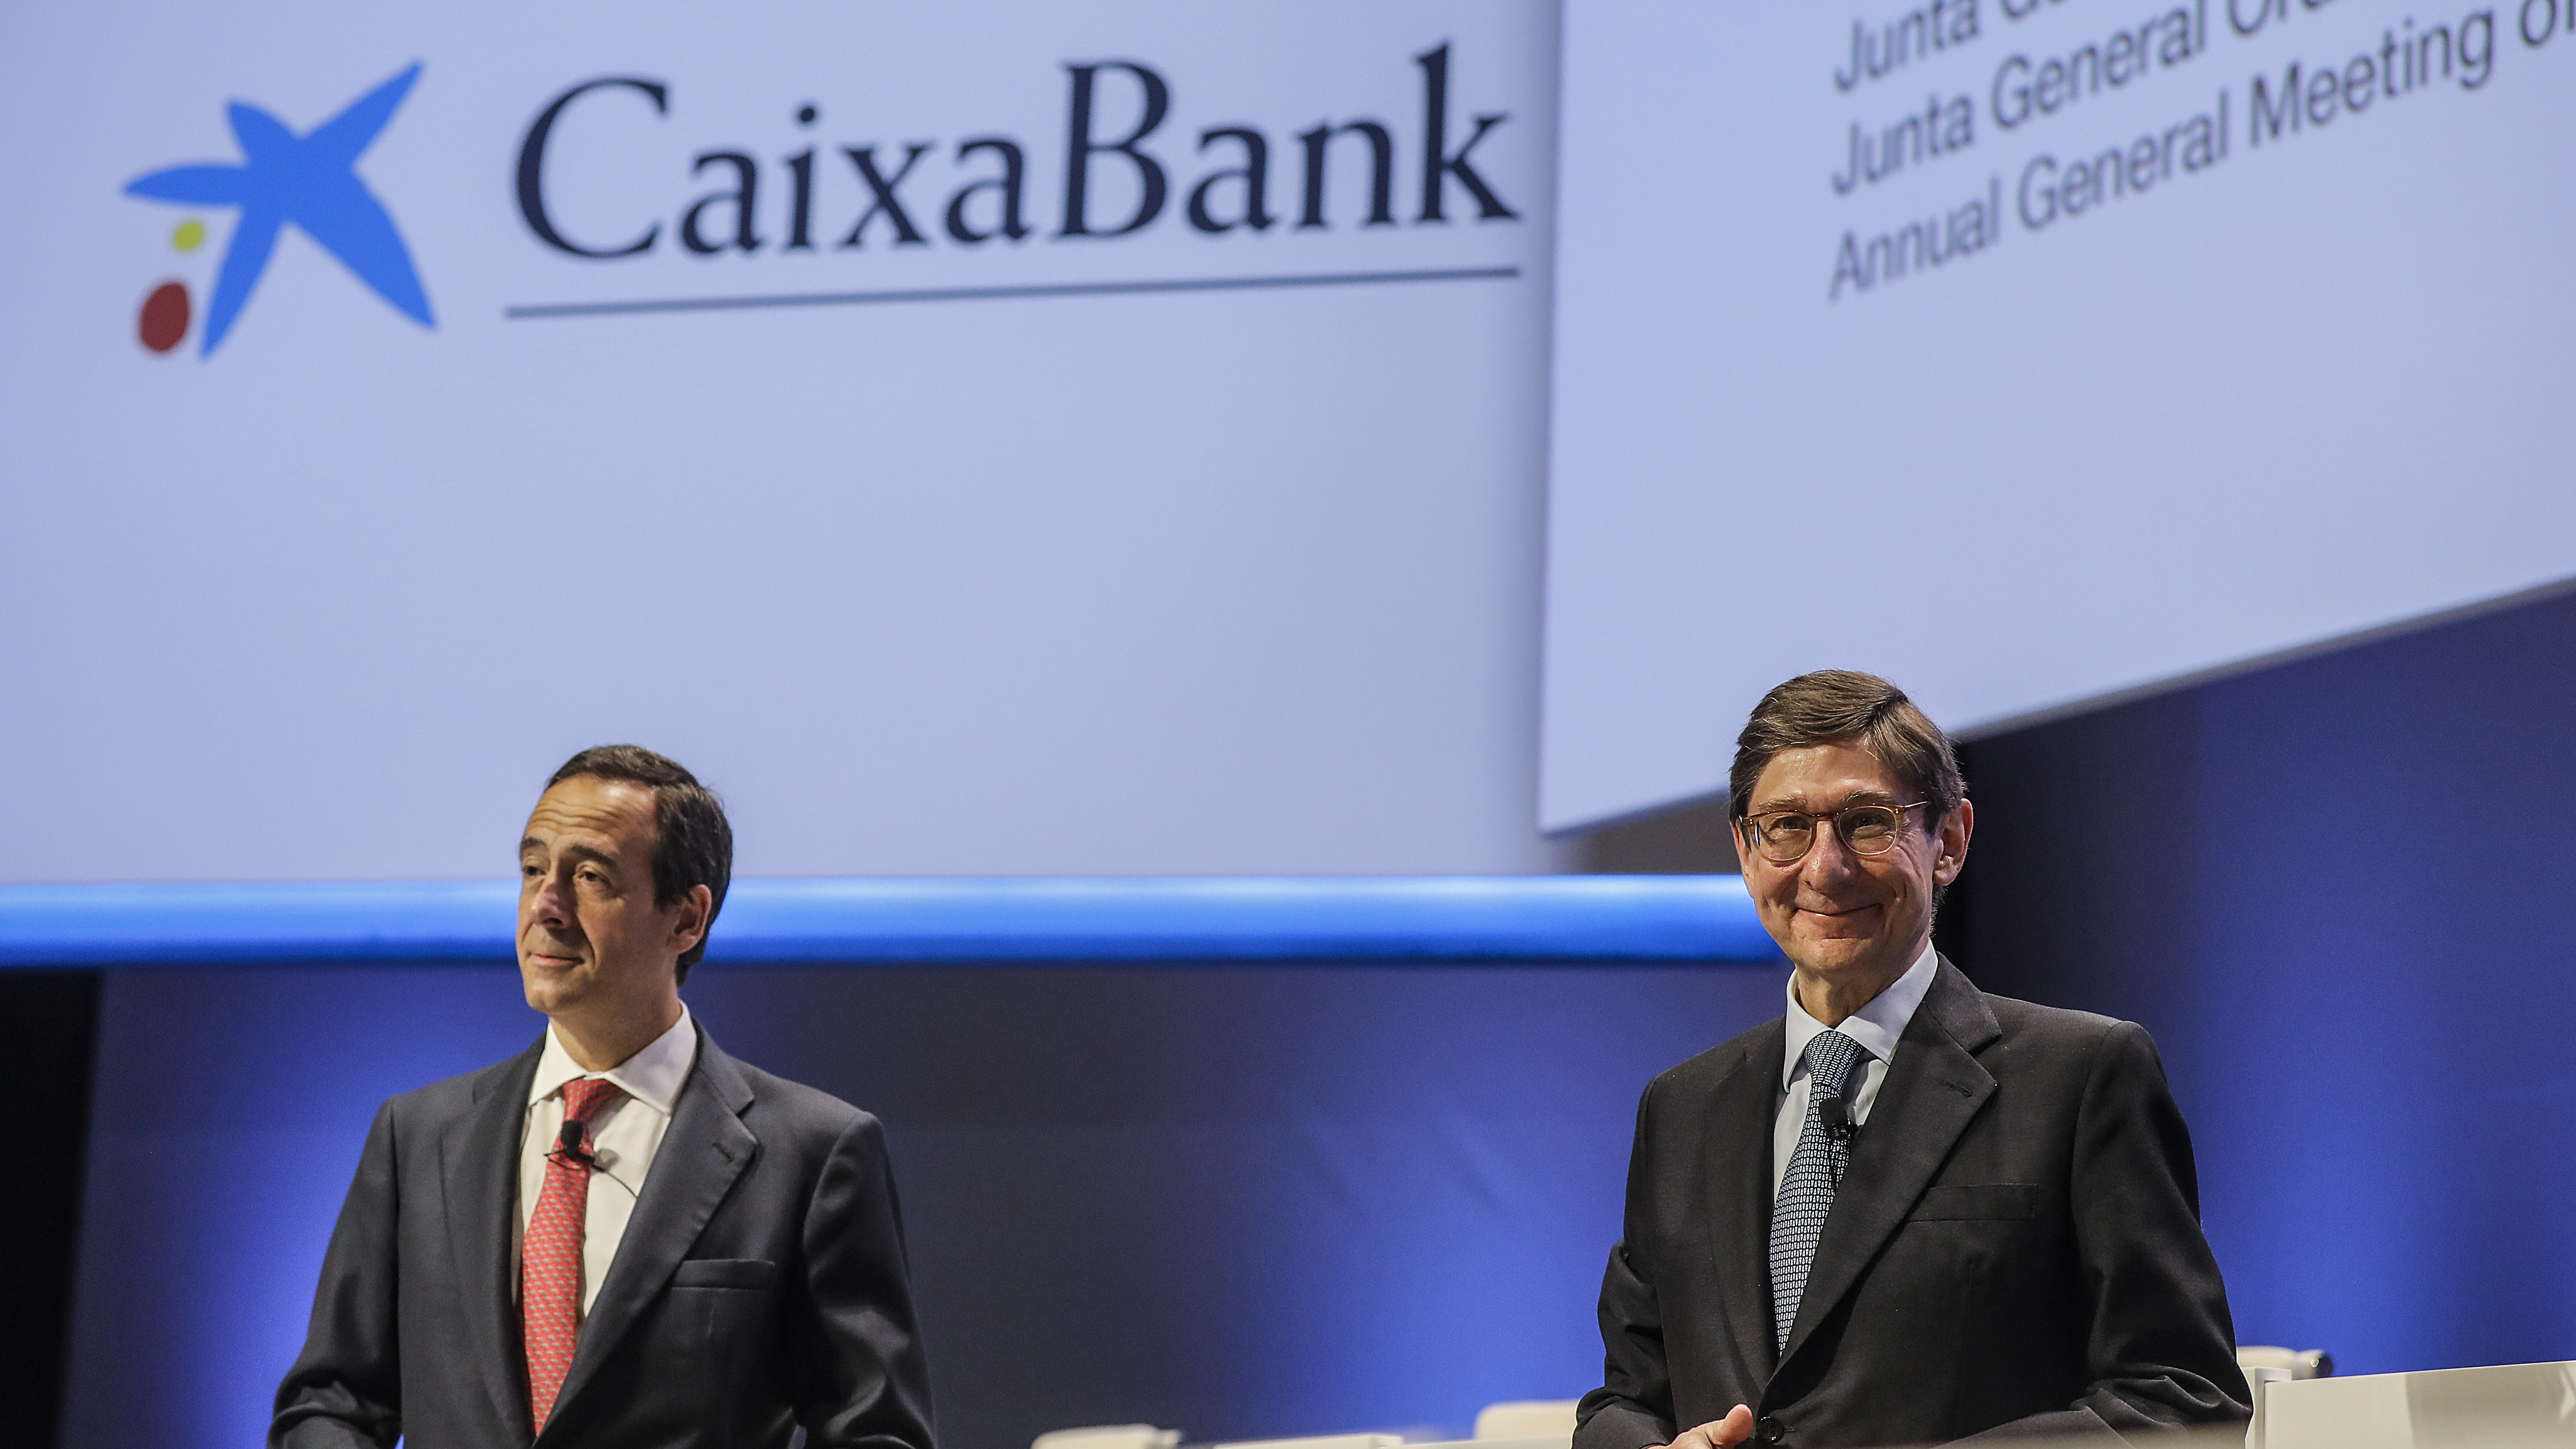 Bankia dejó de considerar Cataluña como un riesgo al ser absorbida por CaixaBank